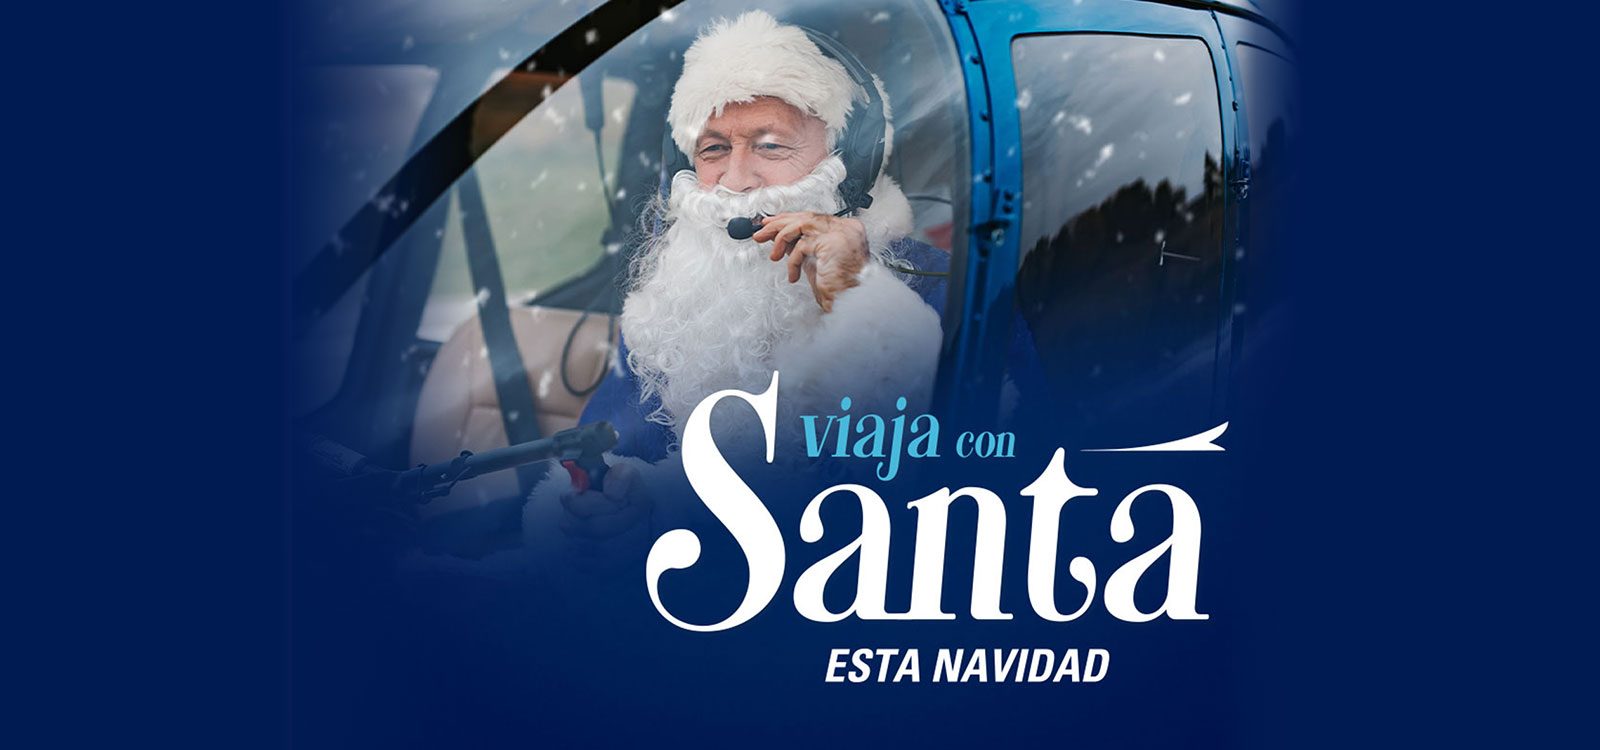 Reglamento Oficial “Viaja con Santa en Helicóptero”